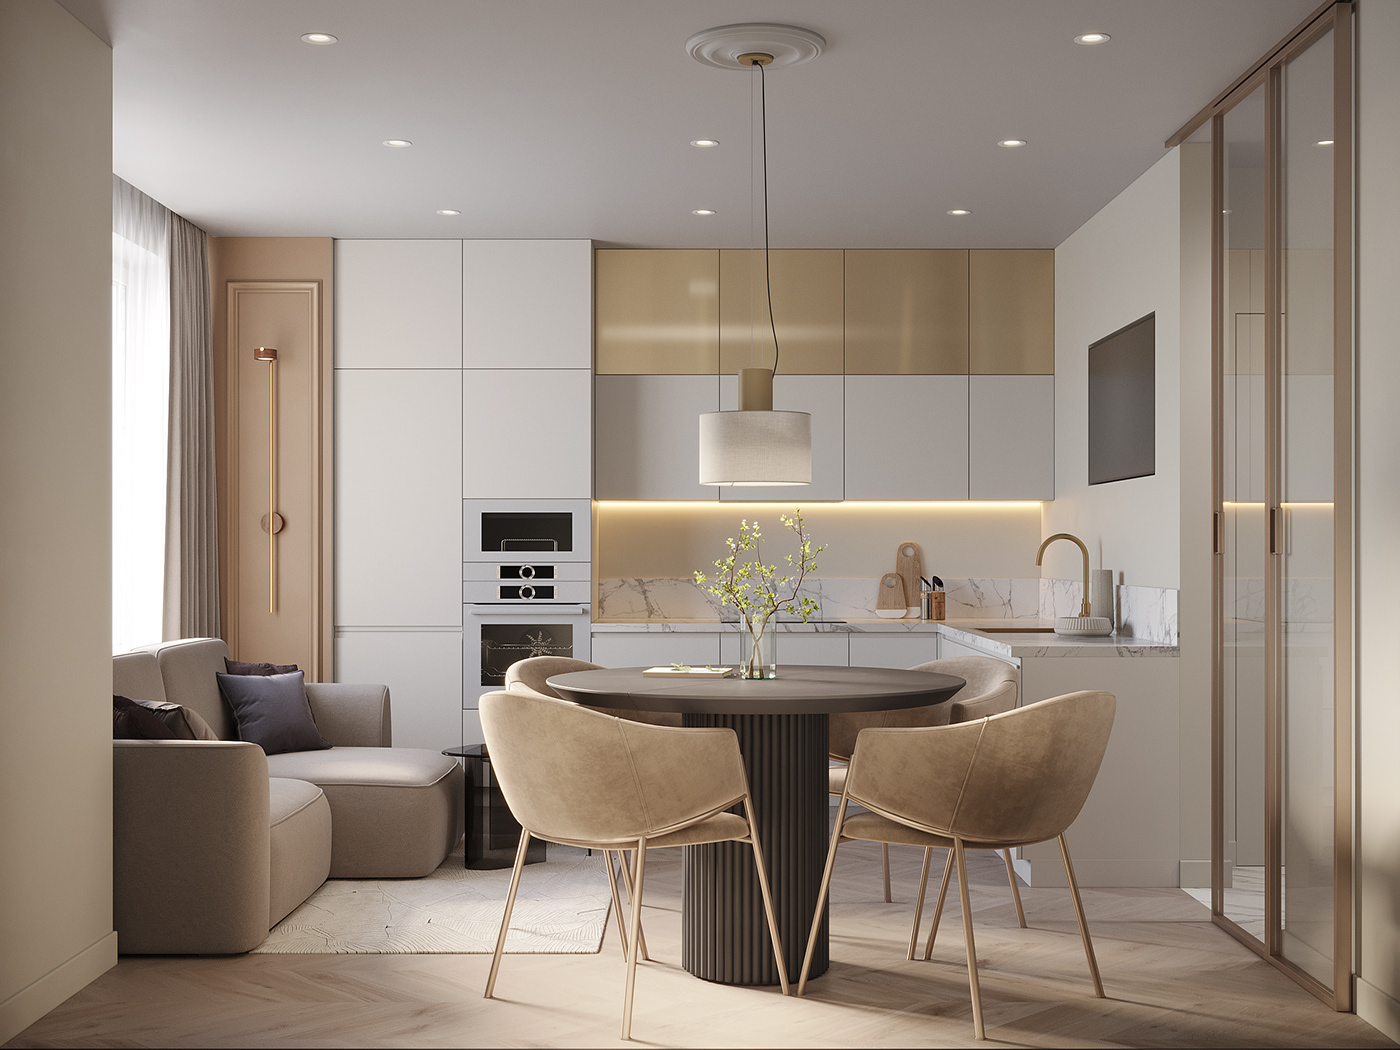 гостиная   кухня-гостиная кухня design interior design  CGI 3ds max мебель furniture product design 